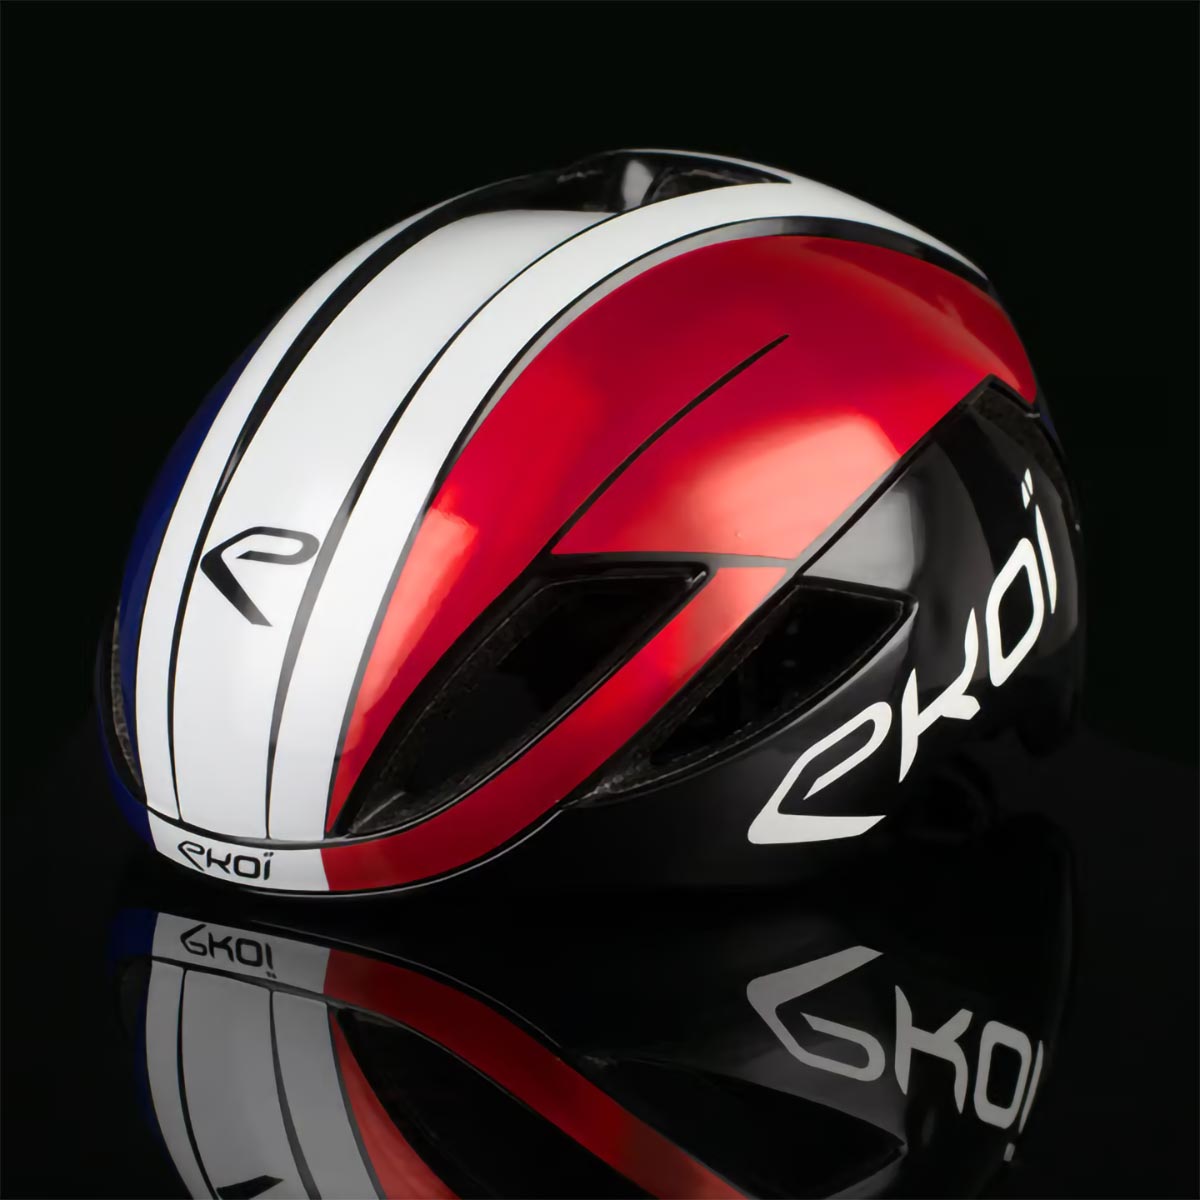 Ekoï presenta la AR14 Nations, una edición limitada de su mejor casco con los colores de 11 países distintos